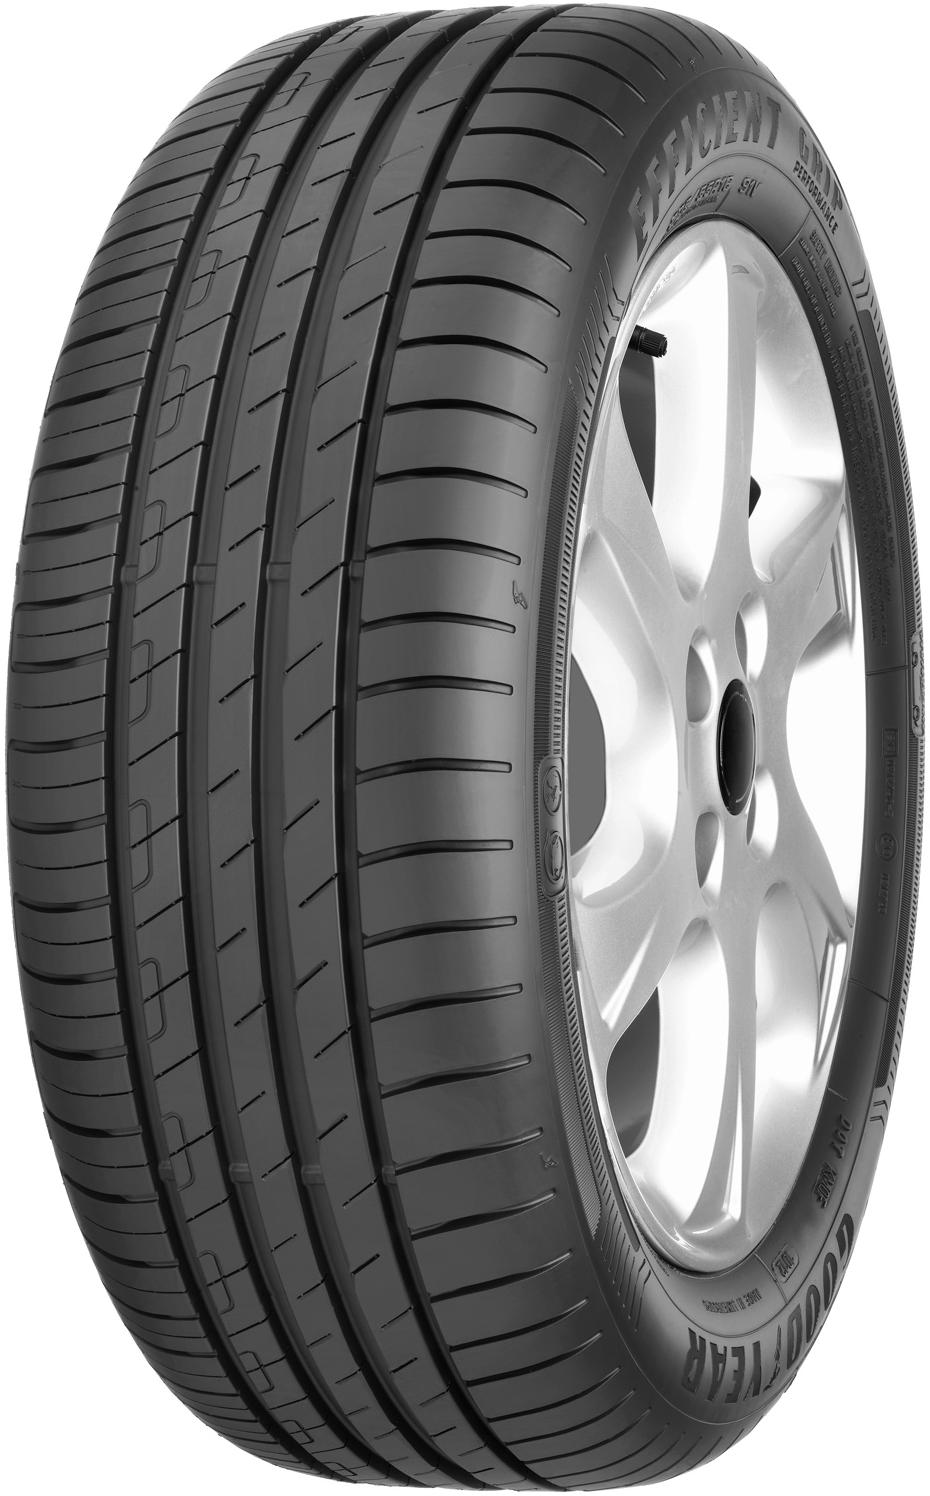 Автомобилни гуми GOODYEAR EFFI GRIP PERF (2017) MERCEDES 225/50 R17 94W